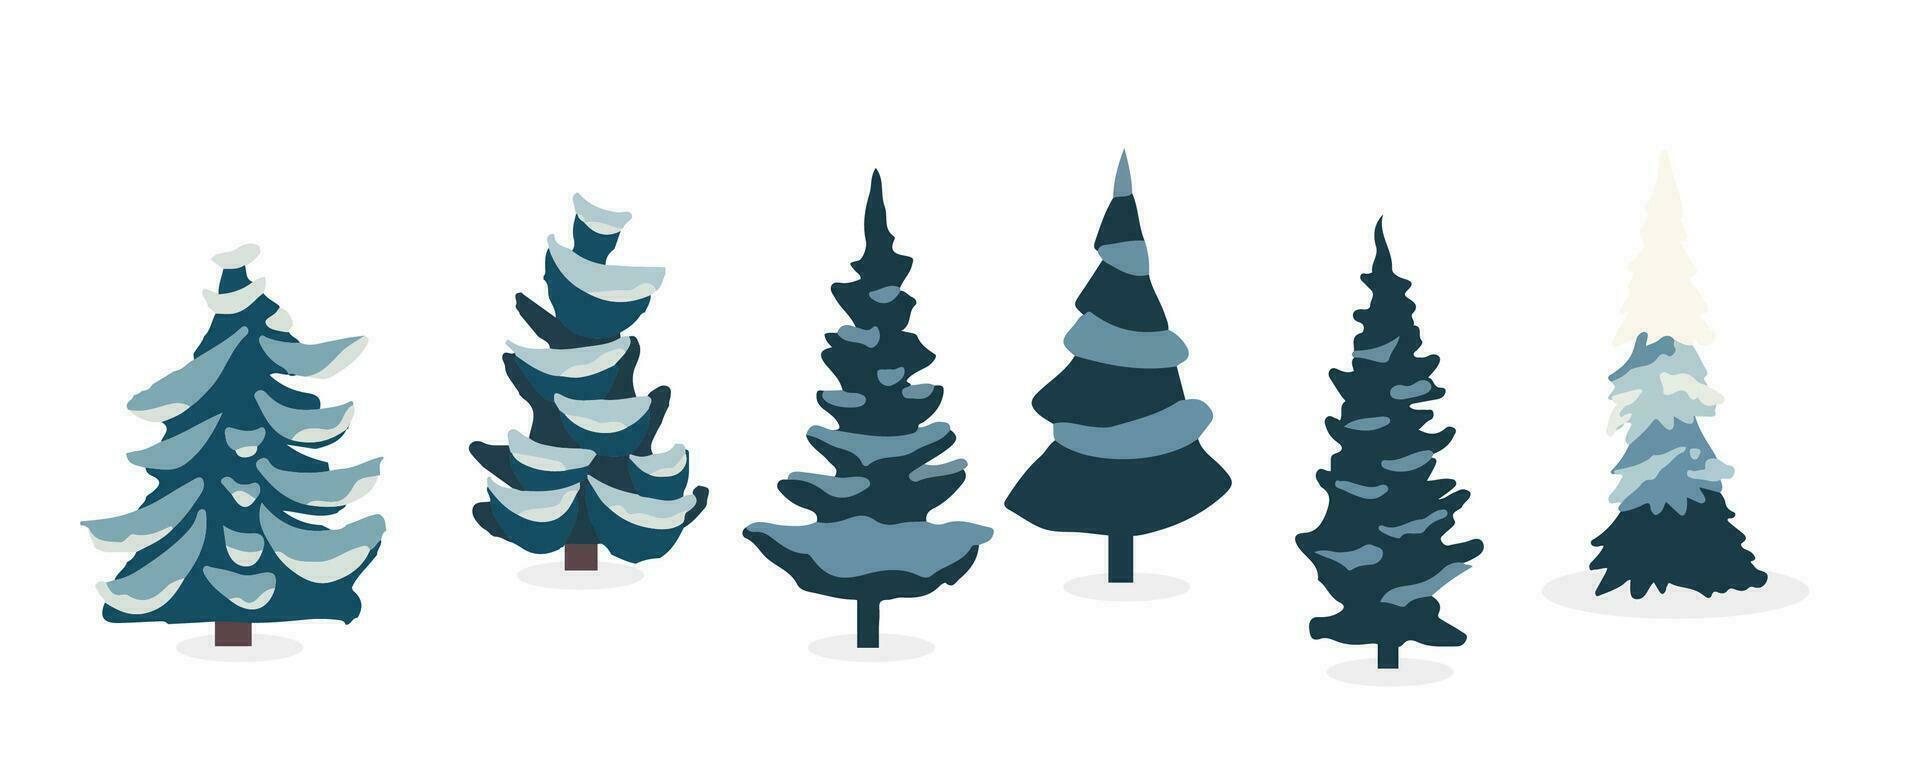 inverno árvore objeto set.editable vetor ilustração para cartão postal